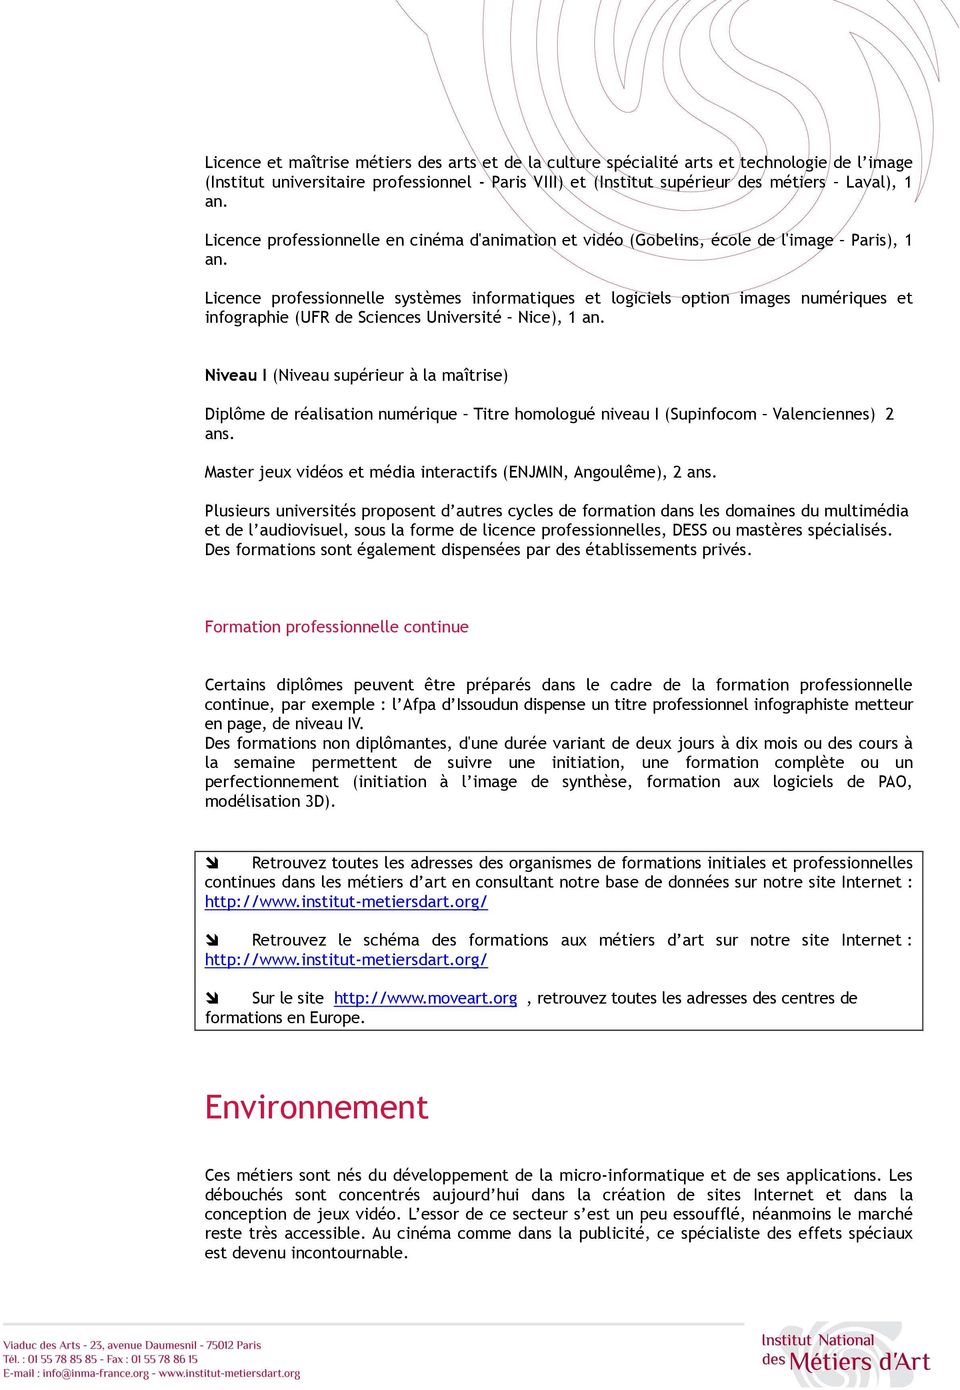 Licence professionnelle systèmes informatiques et logiciels option images numériques et infographie (UFR de Sciences Université Nice), 1 an.